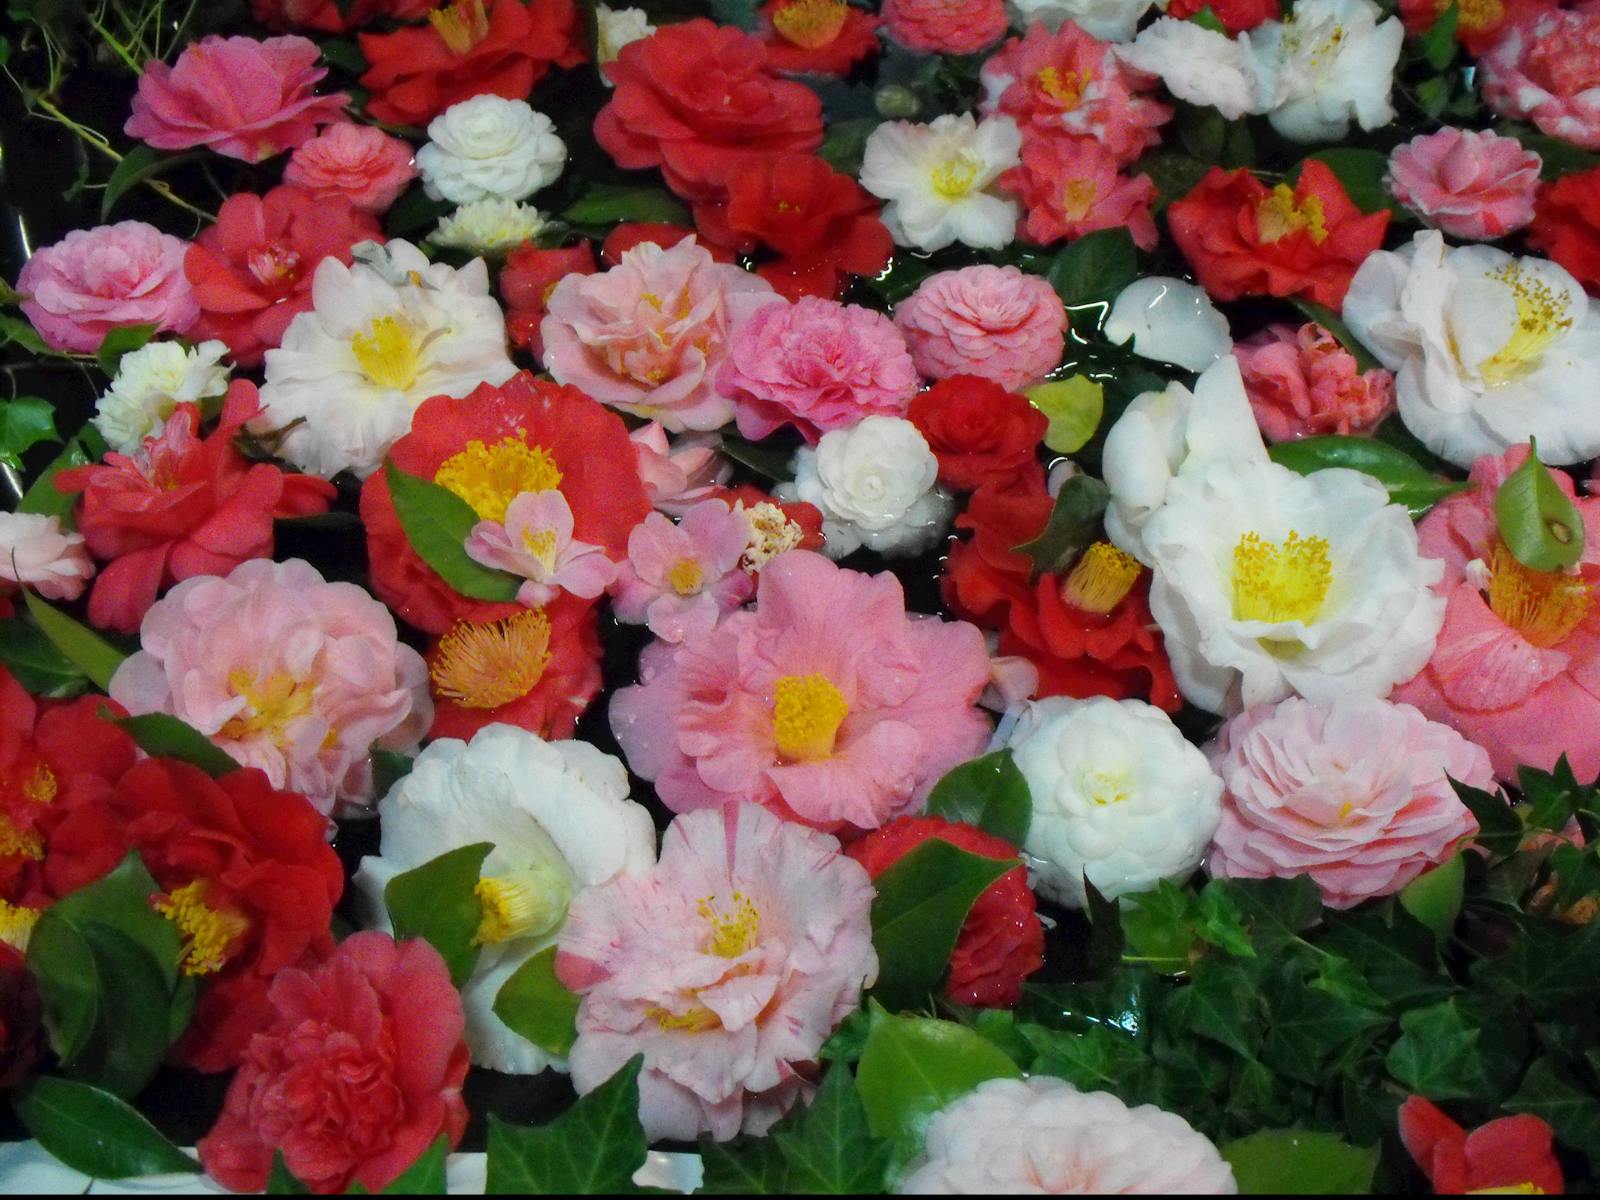 Image for Narrandera Camellia Show